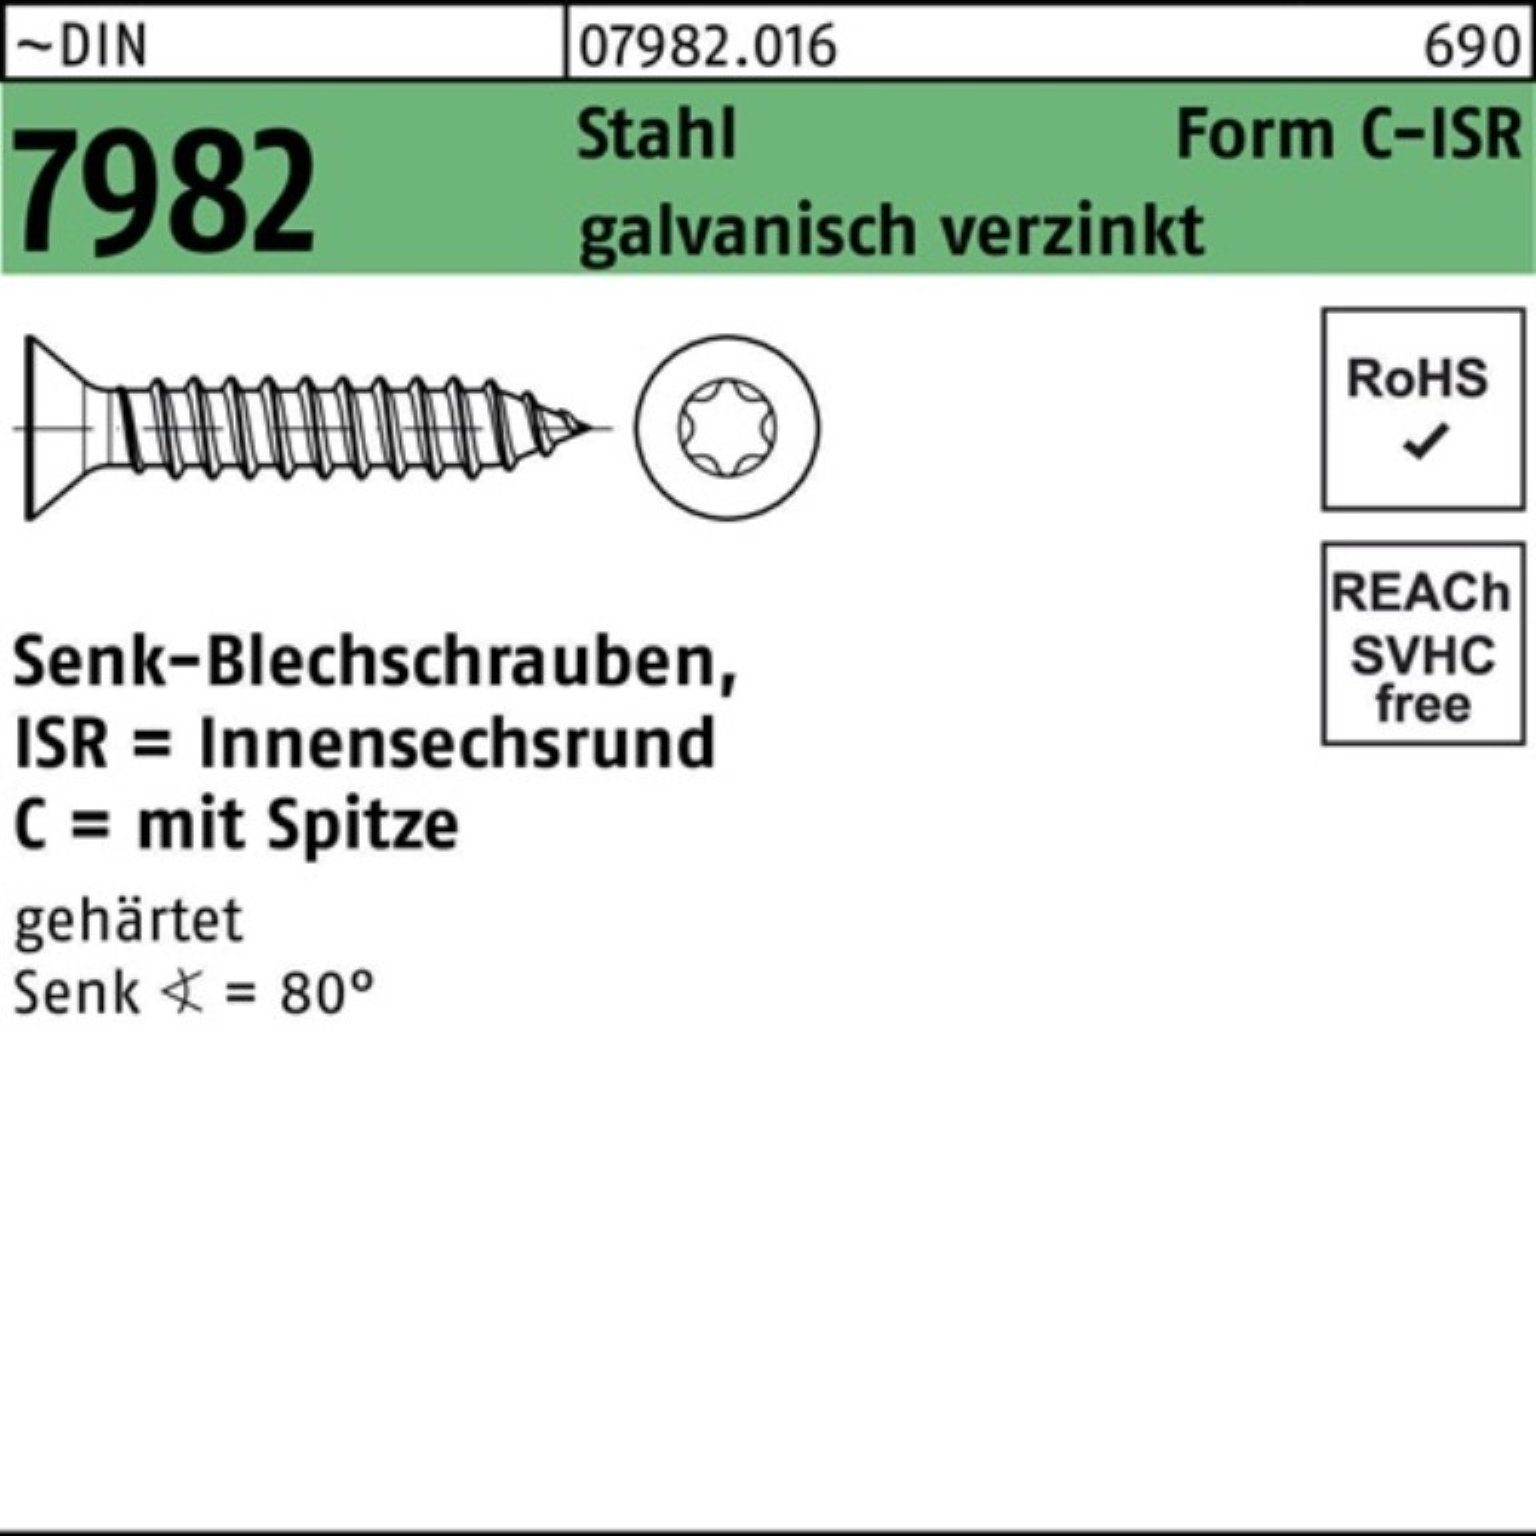 Reyher Schraube 2000er DIN ISR/Spitze 2,2x4,5-C-T6 Stahl Pack Senkblechschraube g 7982